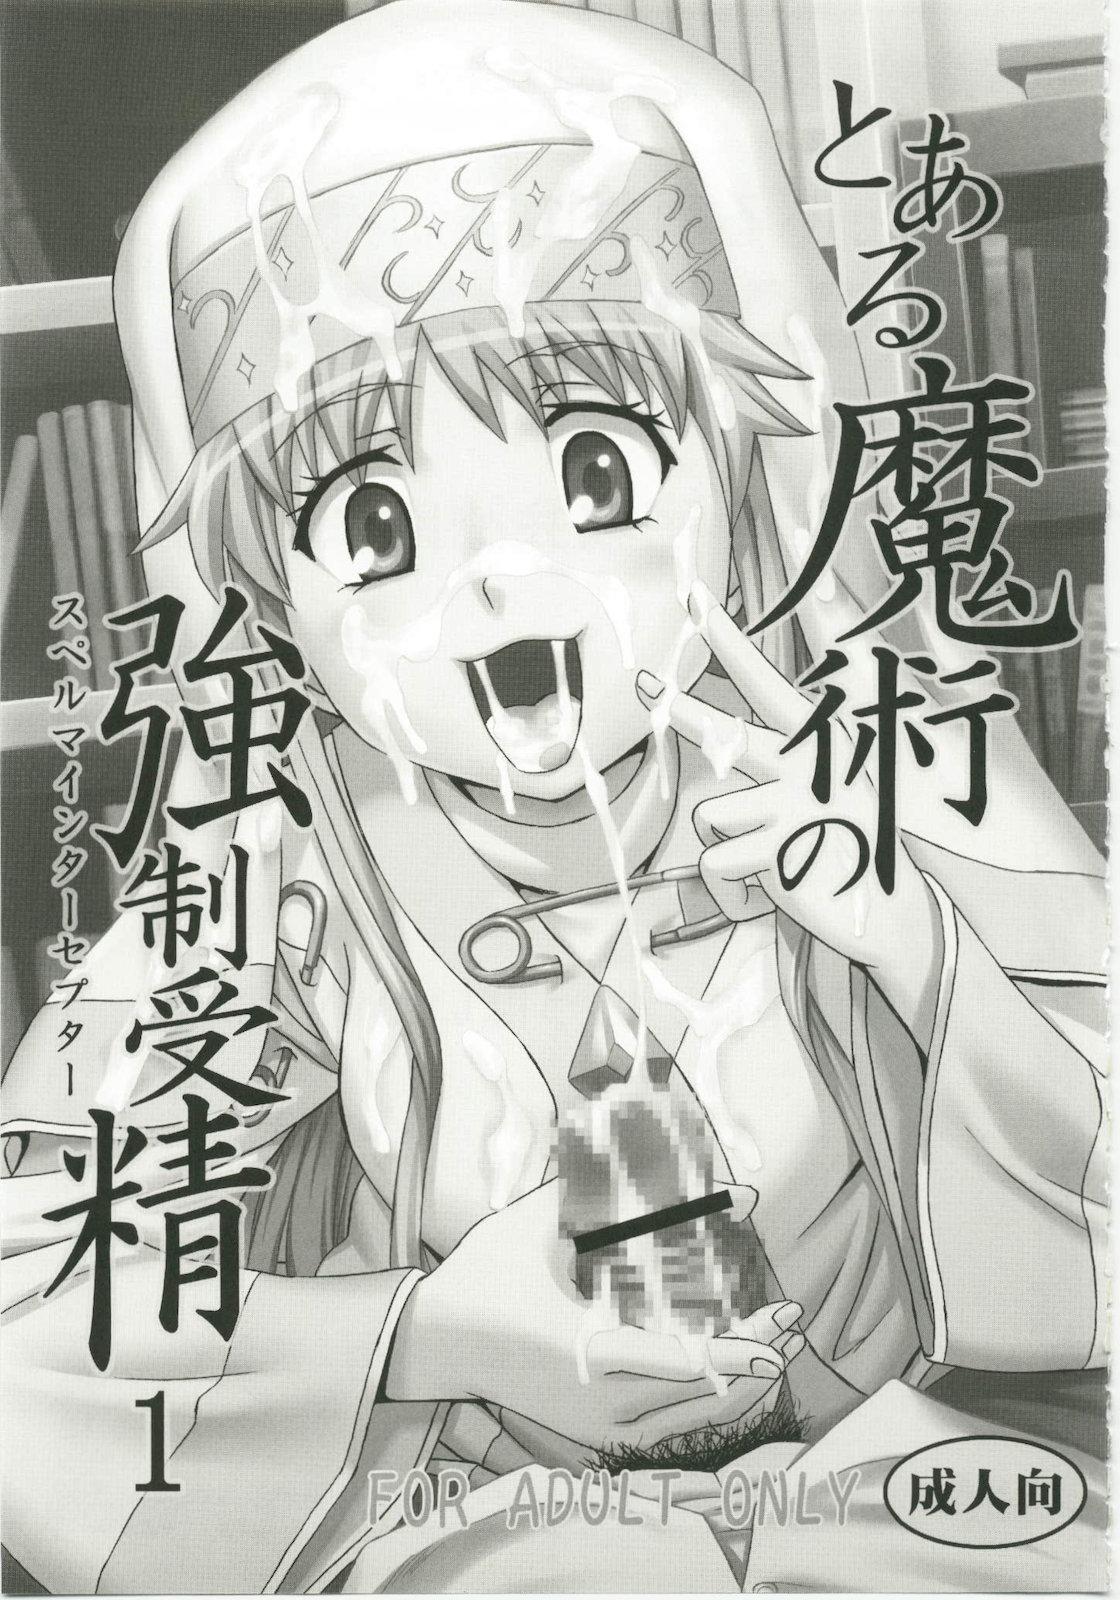 Pene Toaru Majutsu no Sperma Interceptor 1 - Toaru majutsu no index Teenager - Page 3